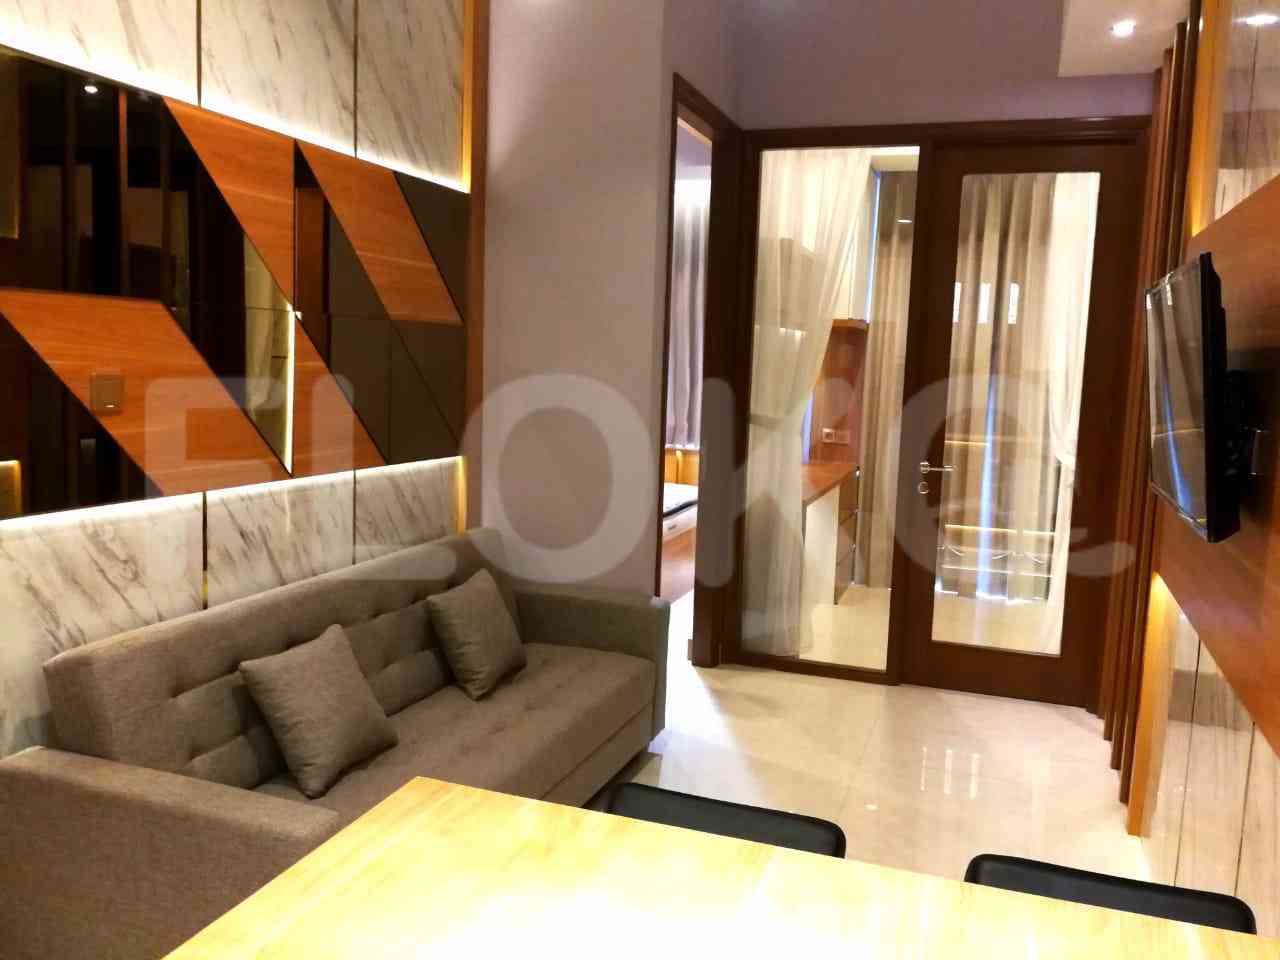 2 Bedroom on 15th Floor for Rent in Taman Anggrek Residence - ftaae7 3